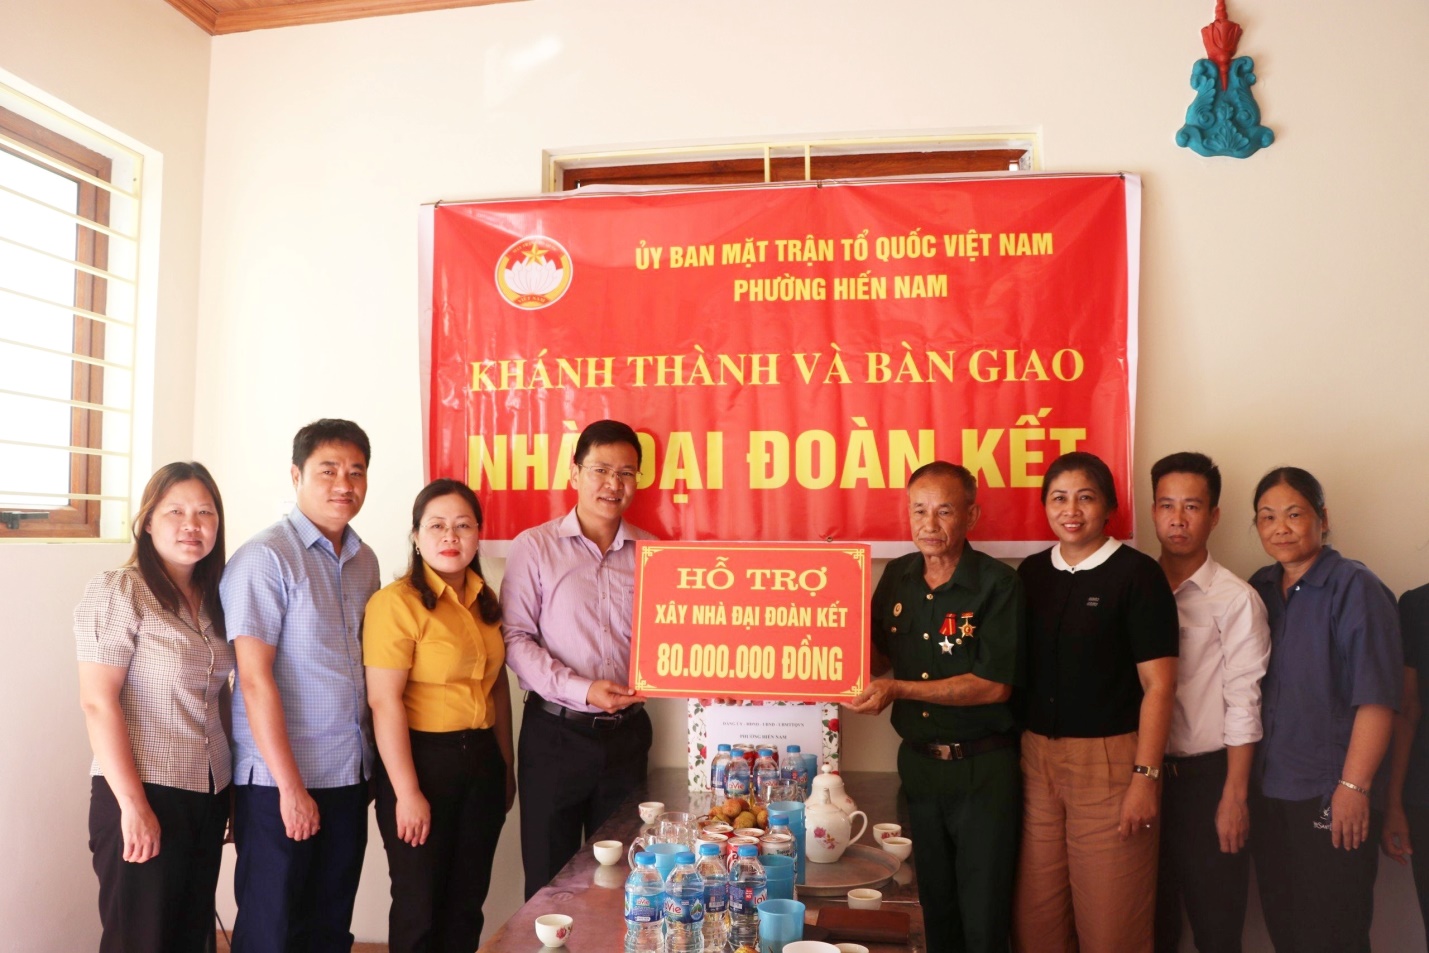 Uỷ ban MTTQ Việt Nam thành phố bàn giao nhà “Đại đoàn kết” tại phường Hiến Nam và trao hỗ trợ cho gia đình có hoàn cảnh khó khăn tại phường Lam Sơn